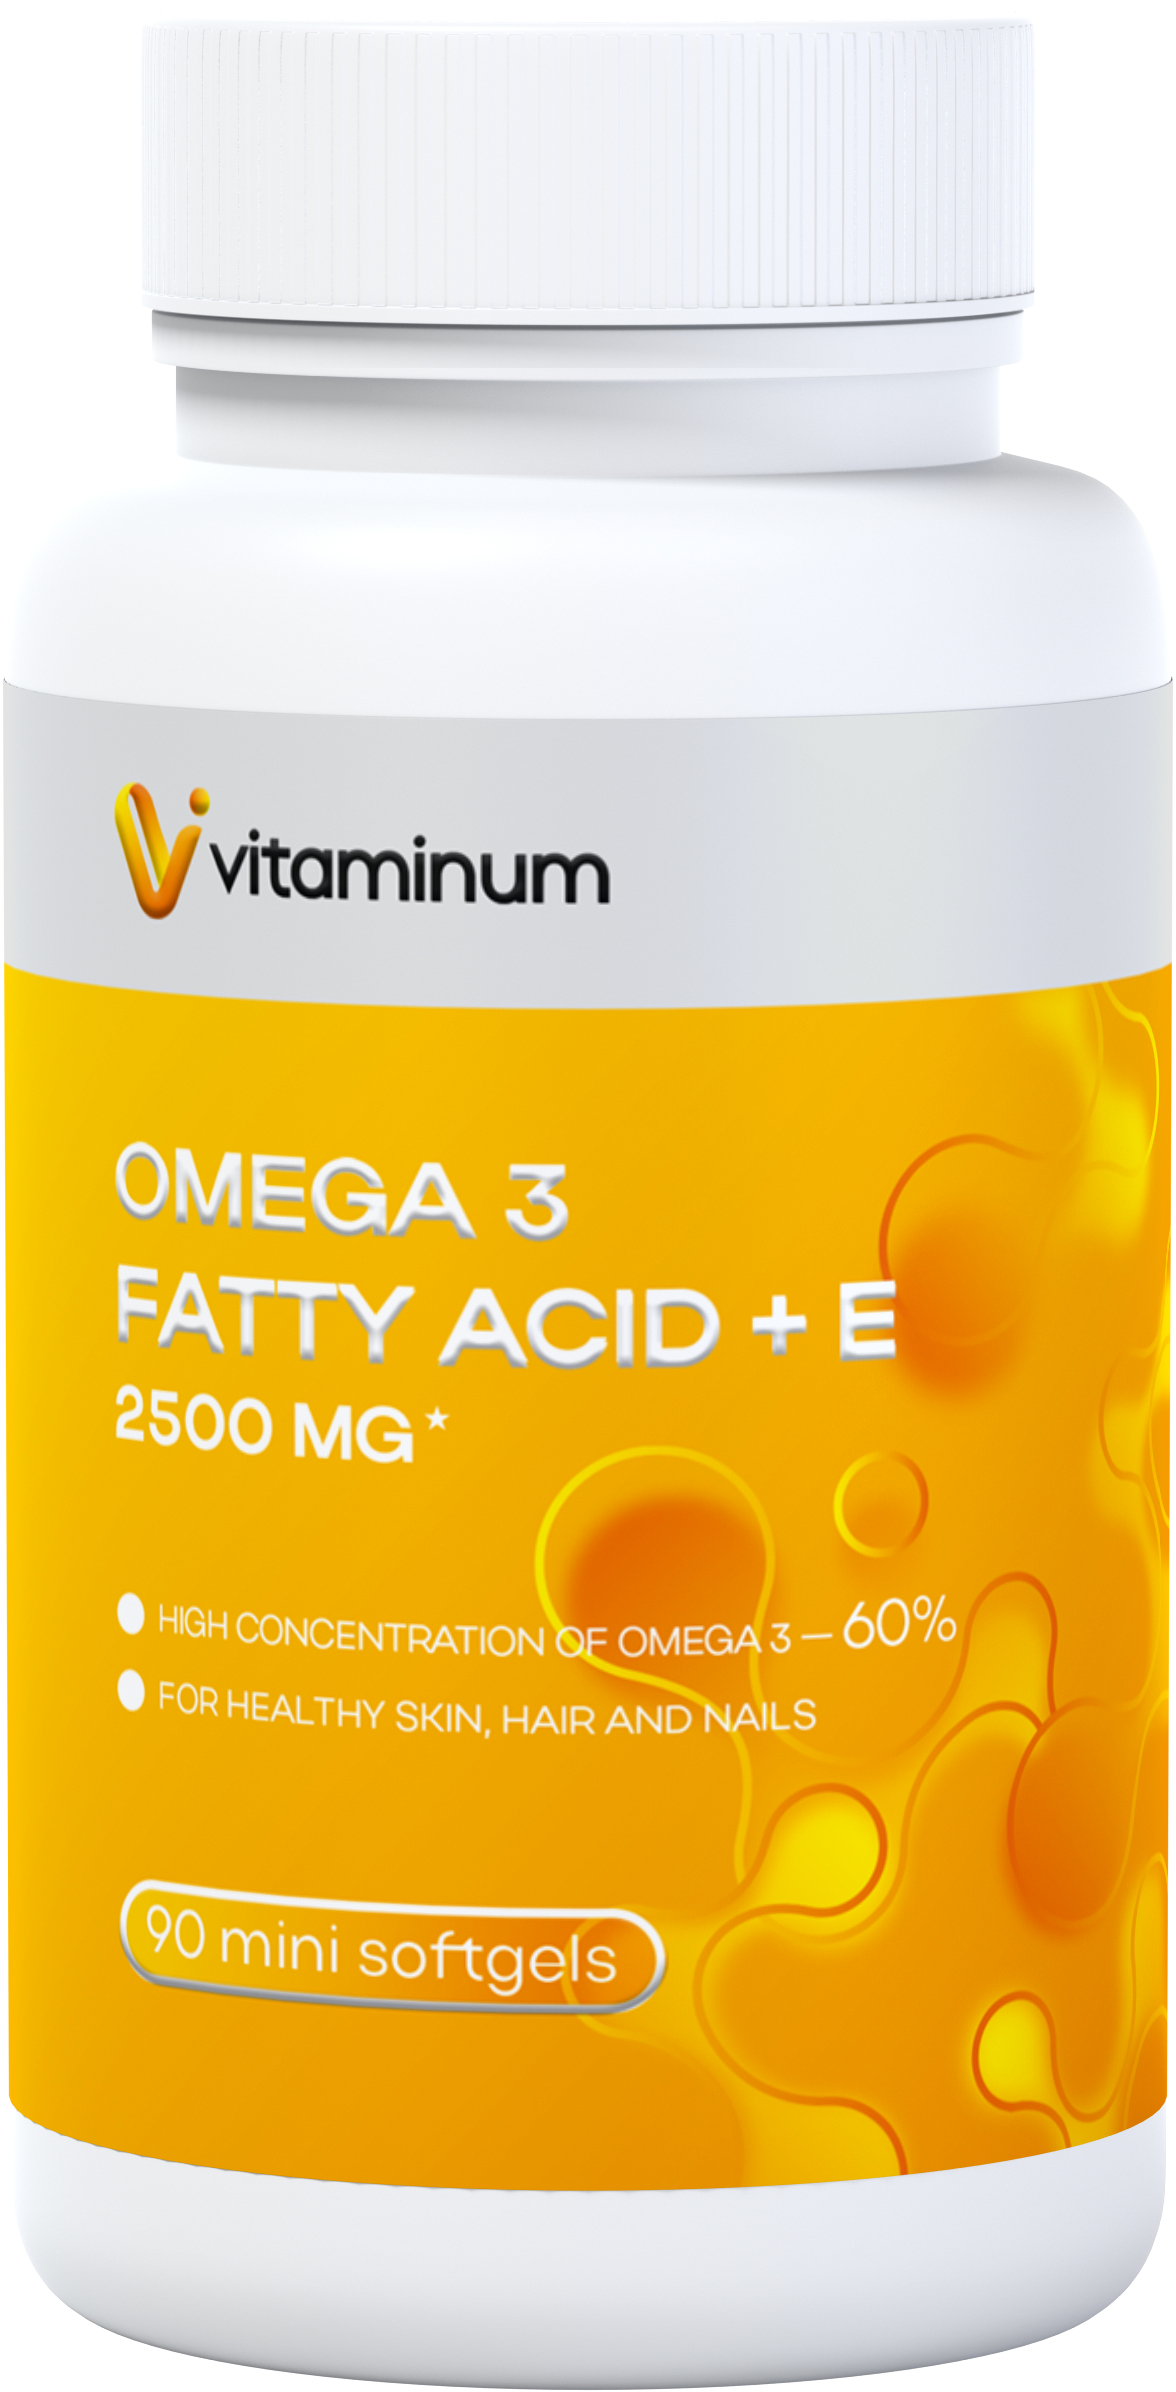  Vitaminum ОМЕГА 3 60% + витамин Е (2500 MG*) 90 капсул 700 мг   в Пушкине